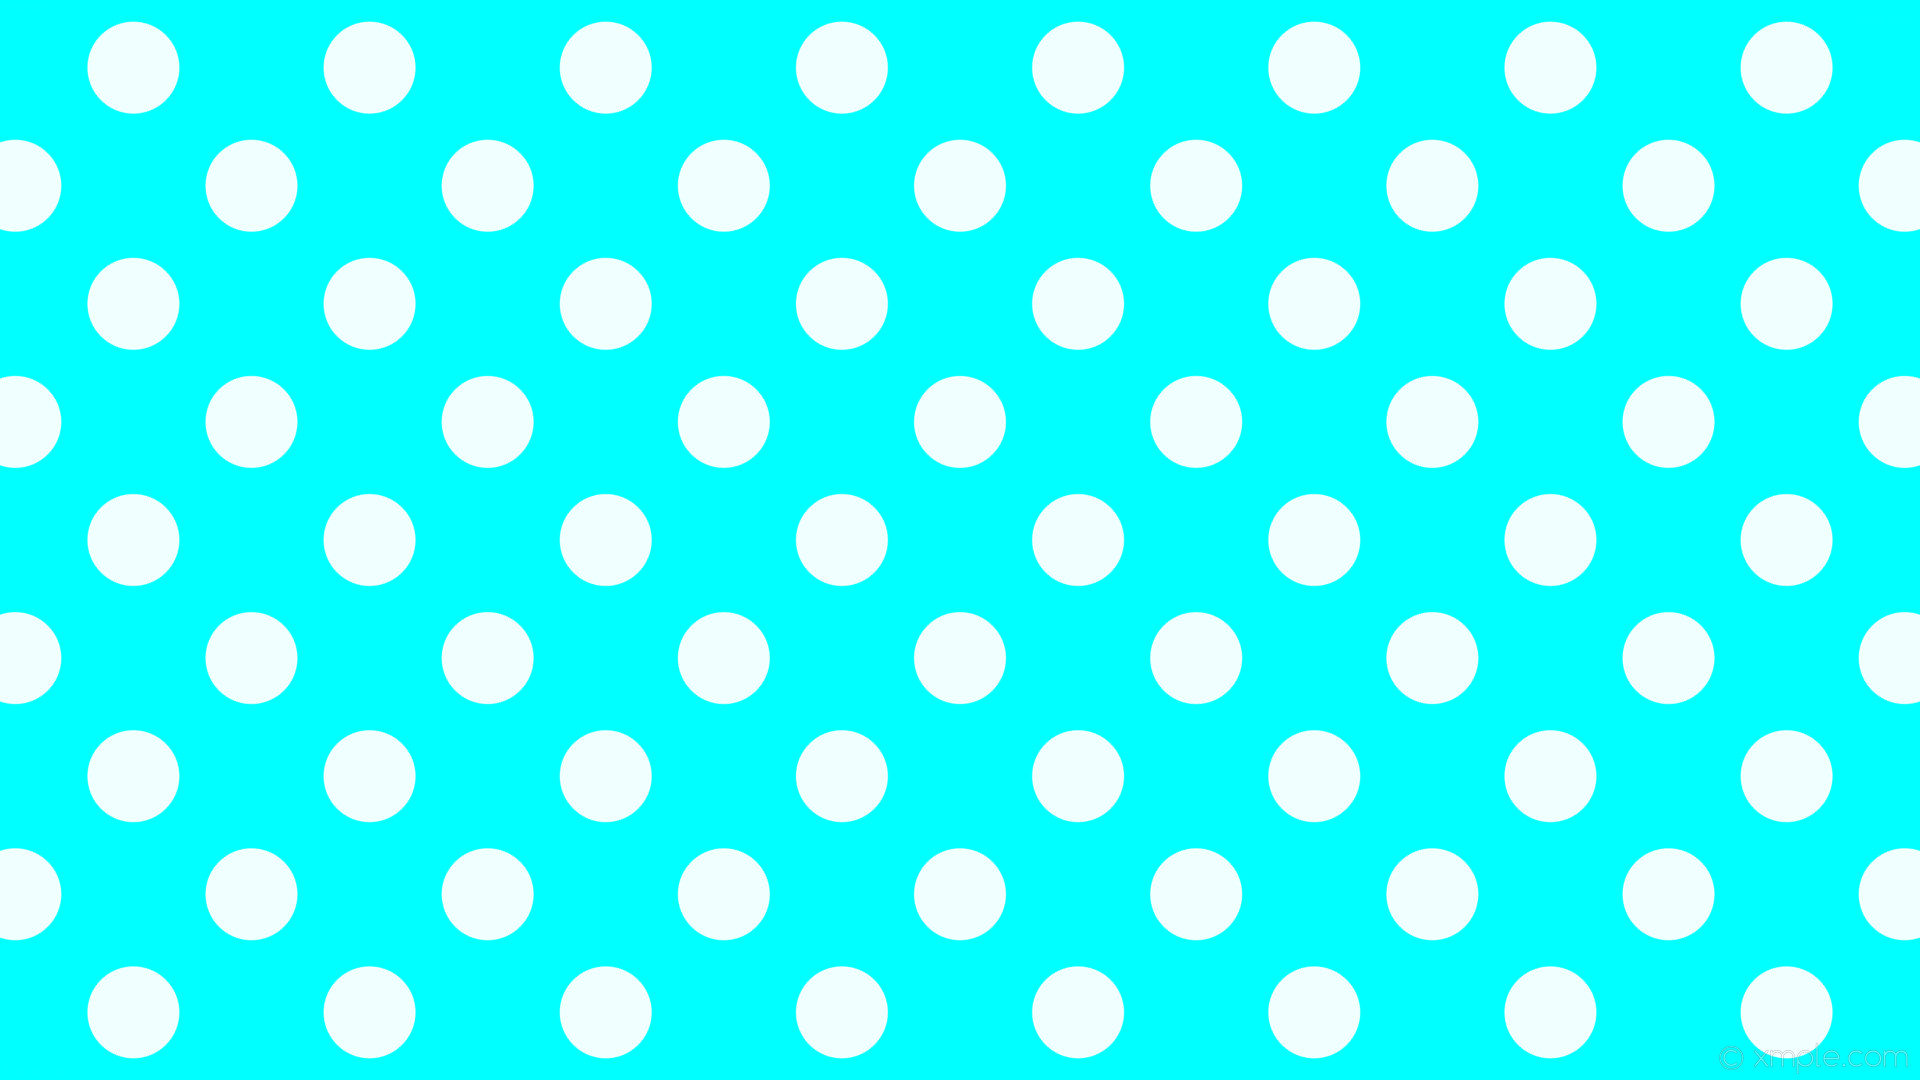 1920x1080 wallpaper dots blue white polka spots aqua cyan azure #00ffff #f0ffff 315Â°  92px